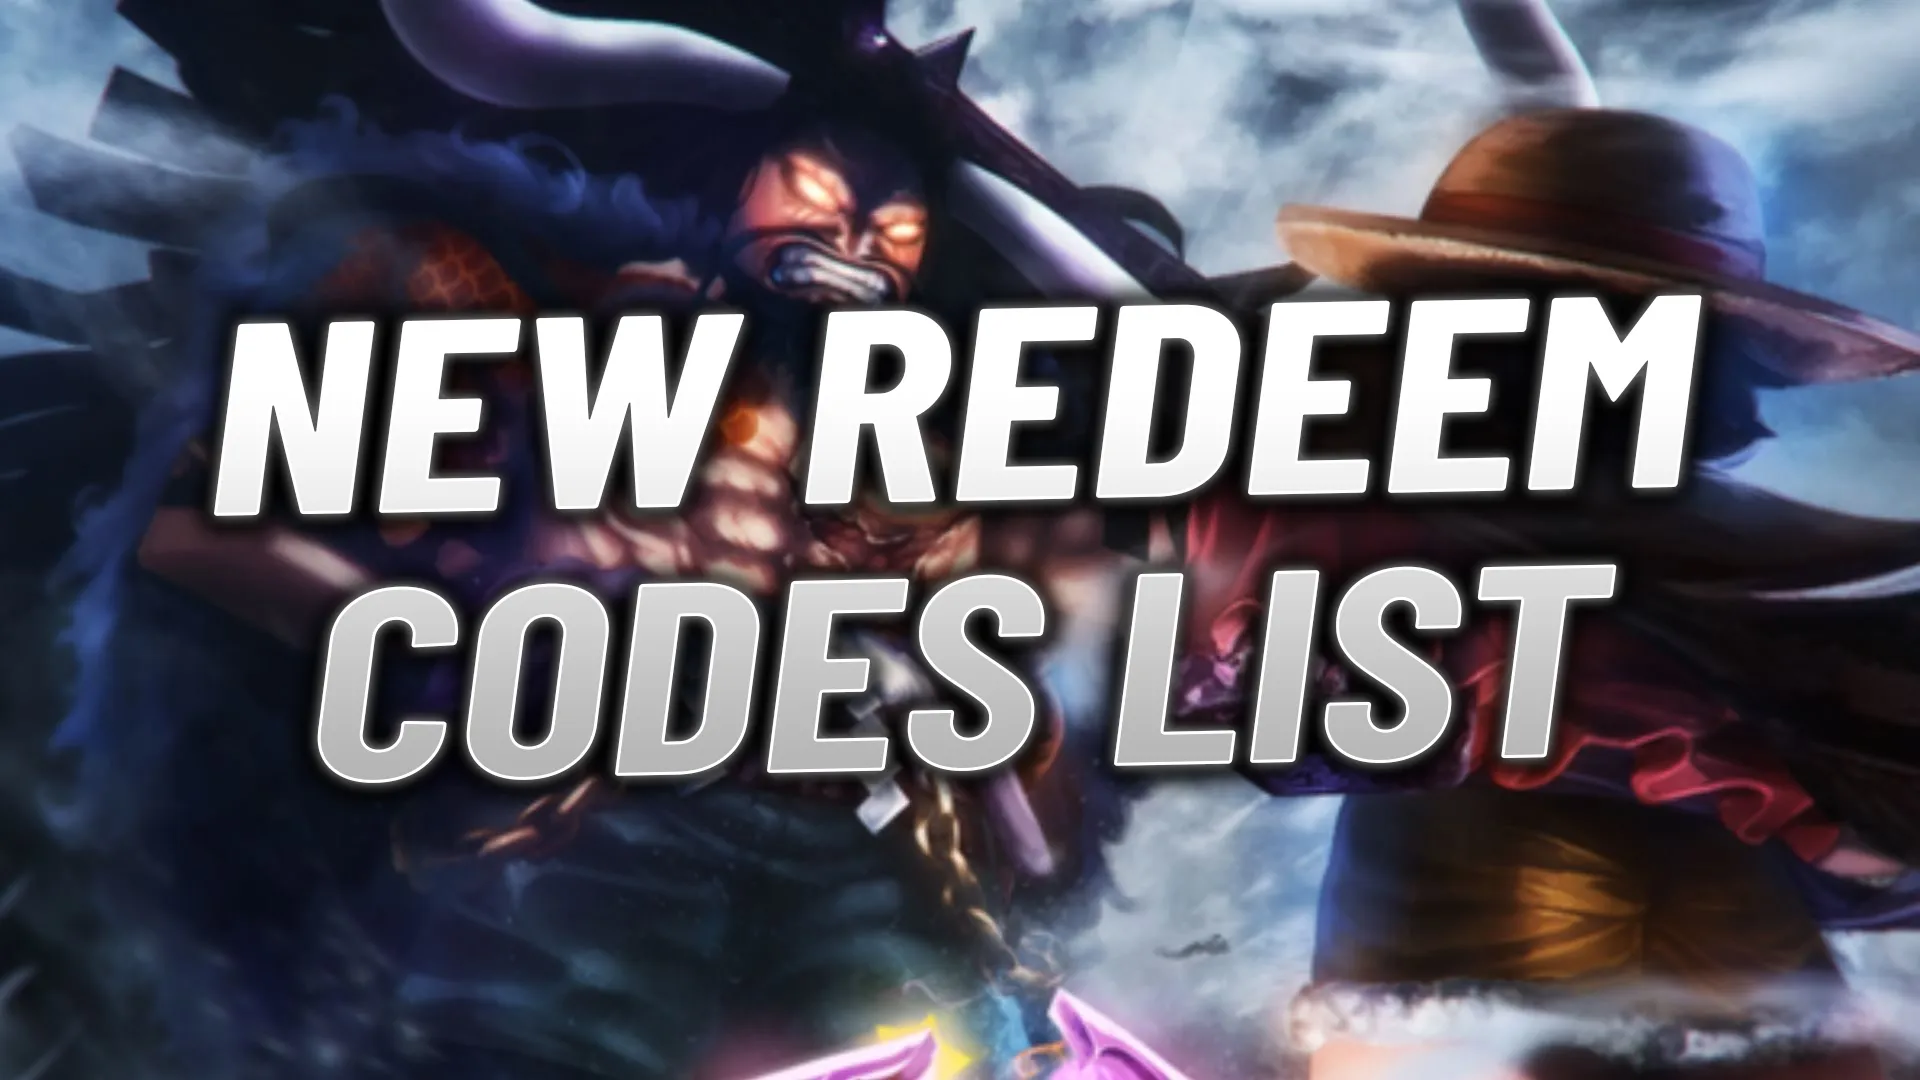 New Roblox Fruit Battlegrounds Redeem Codes List